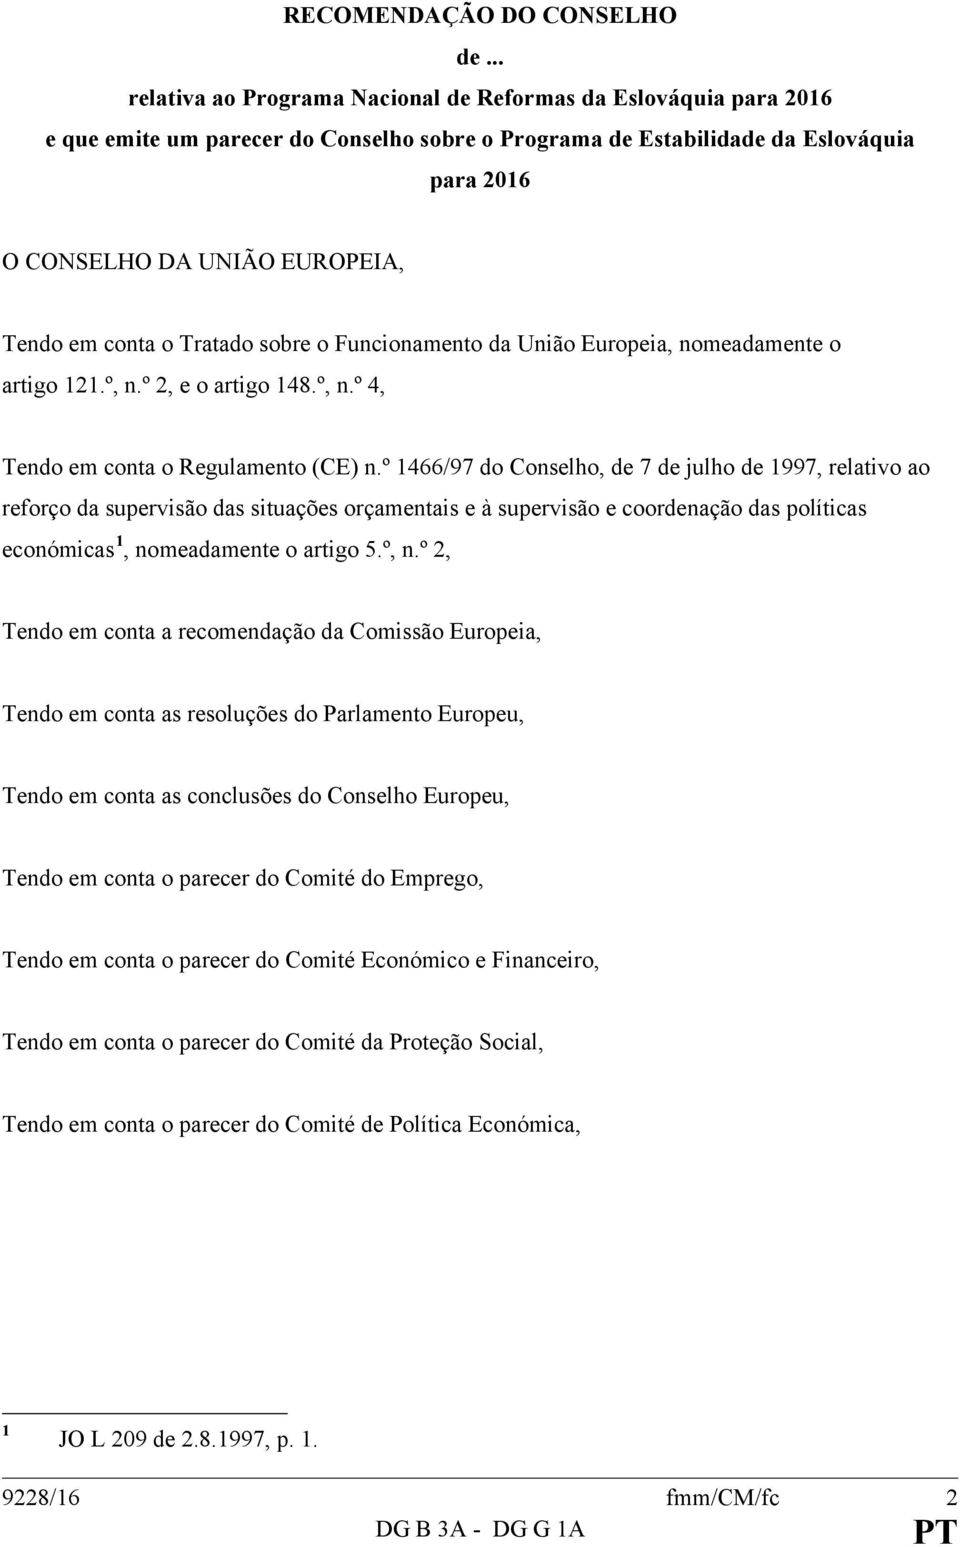 conta o Tratado sobre o Funcionamento da União Europeia, nomeadamente o artigo 121.º, n.º 2, e o artigo 148.º, n.º 4, Tendo em conta o Regulamento (CE) n.